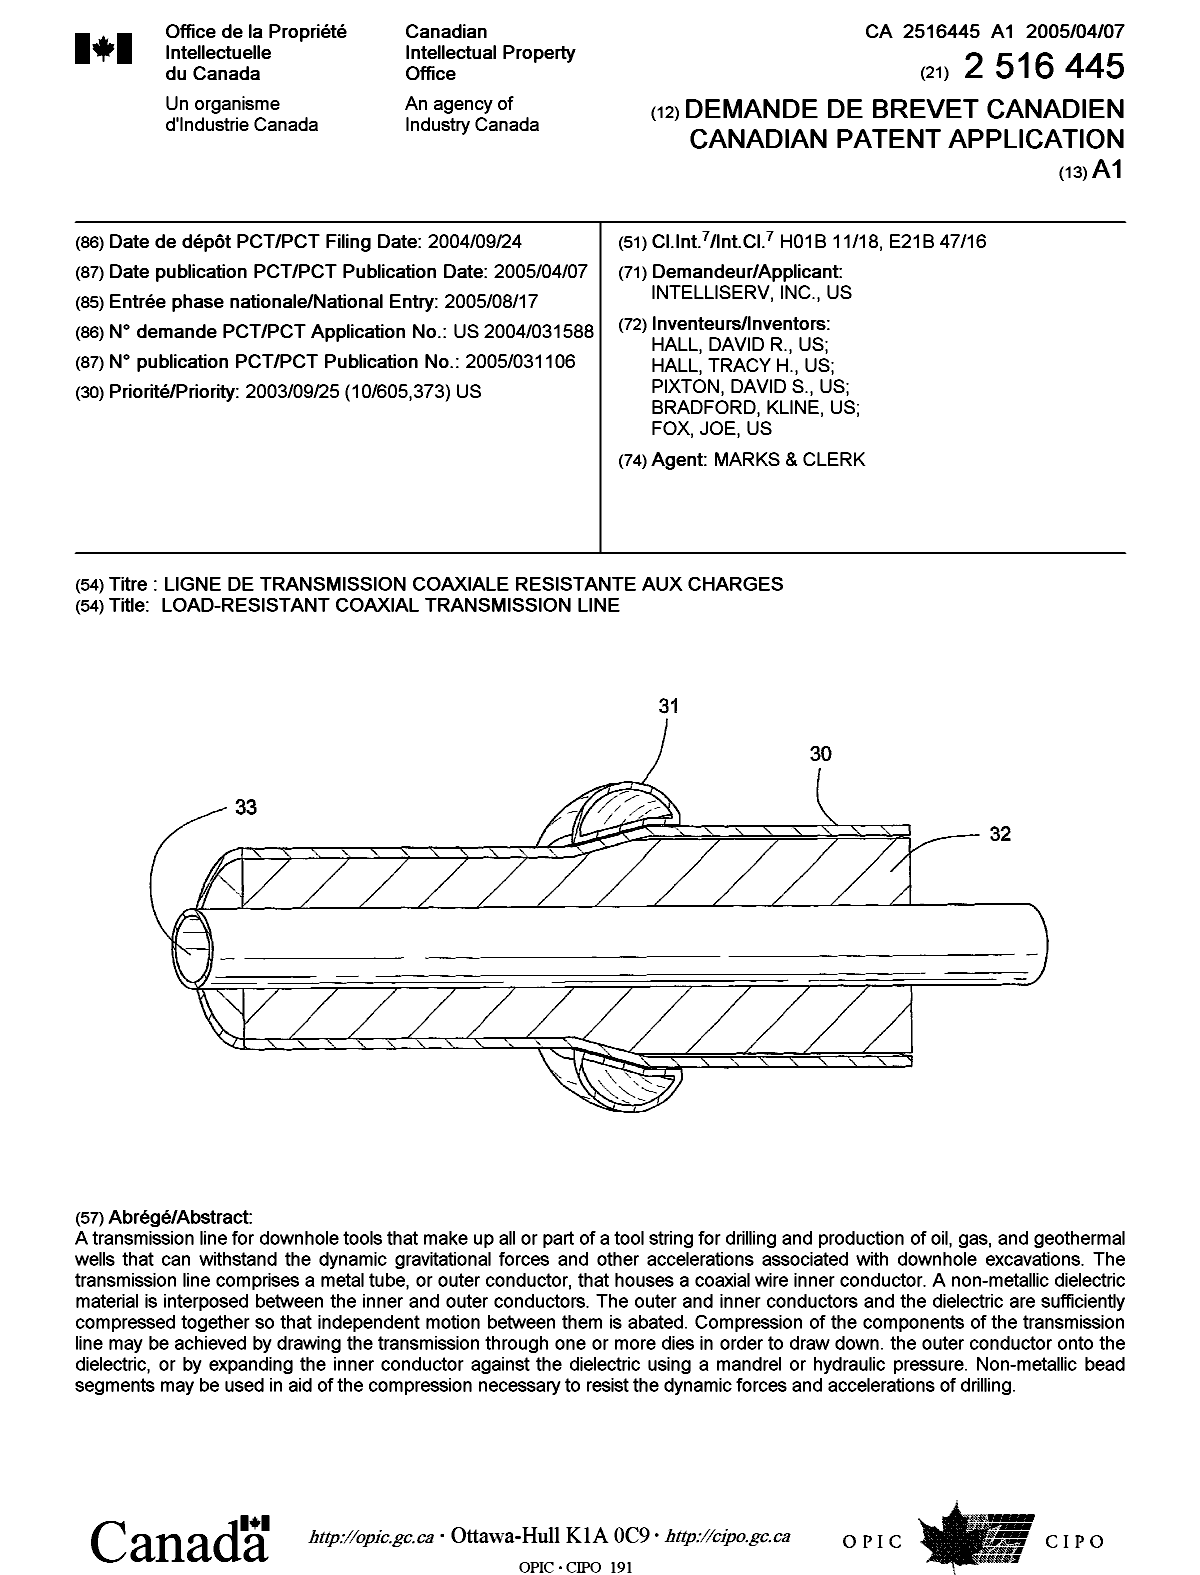 Document de brevet canadien 2516445. Page couverture 20051021. Image 1 de 1